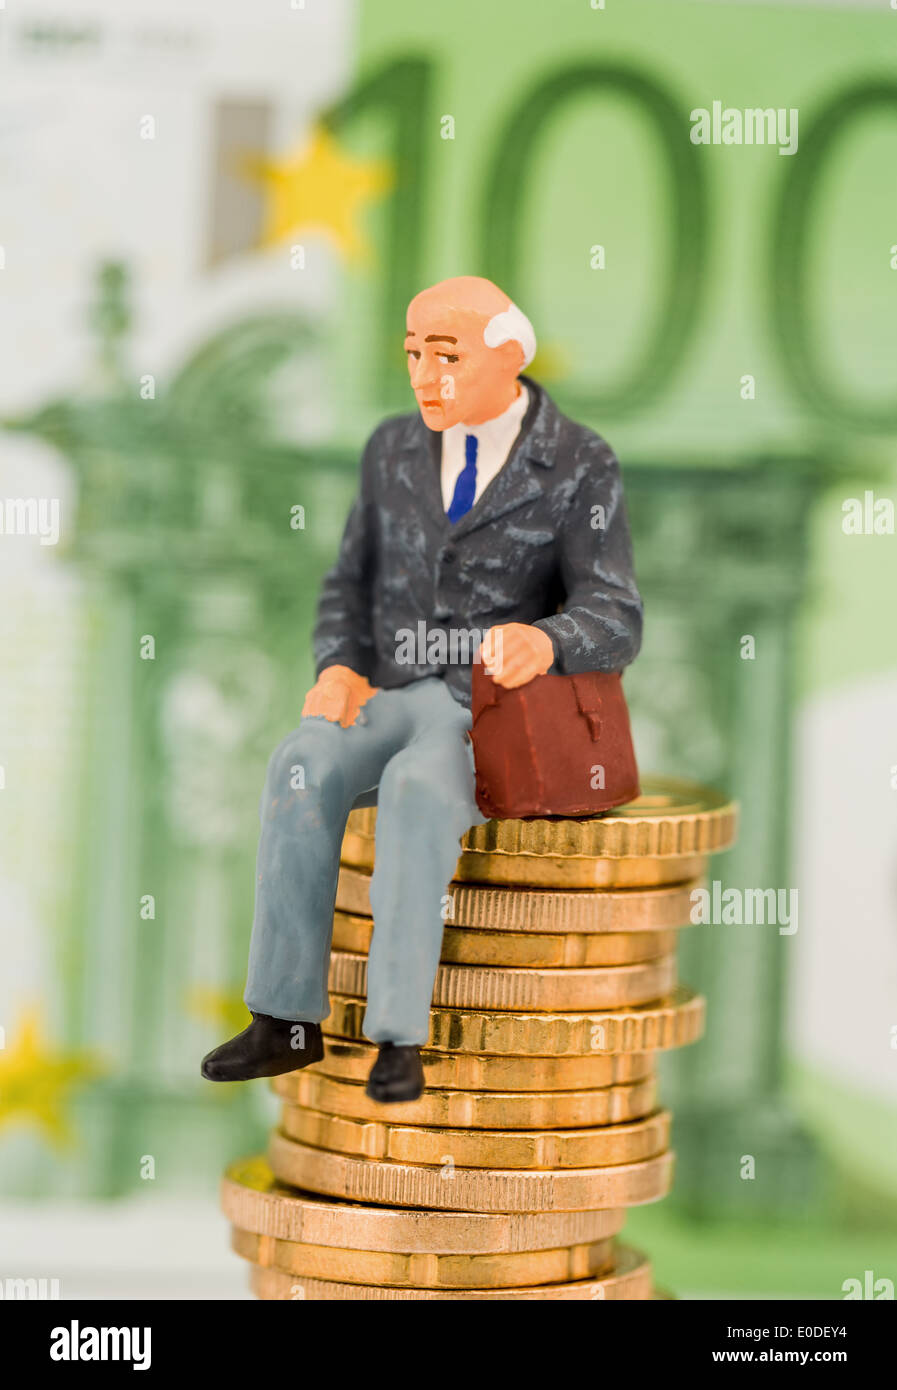 Titolare di una pensione o di una rendita si siede su una pila di monete. Foto simbolico per pensioni e Penison, Ein Rentner sitzt auf einem Muenzstapel. Symbolfoto fue Foto Stock